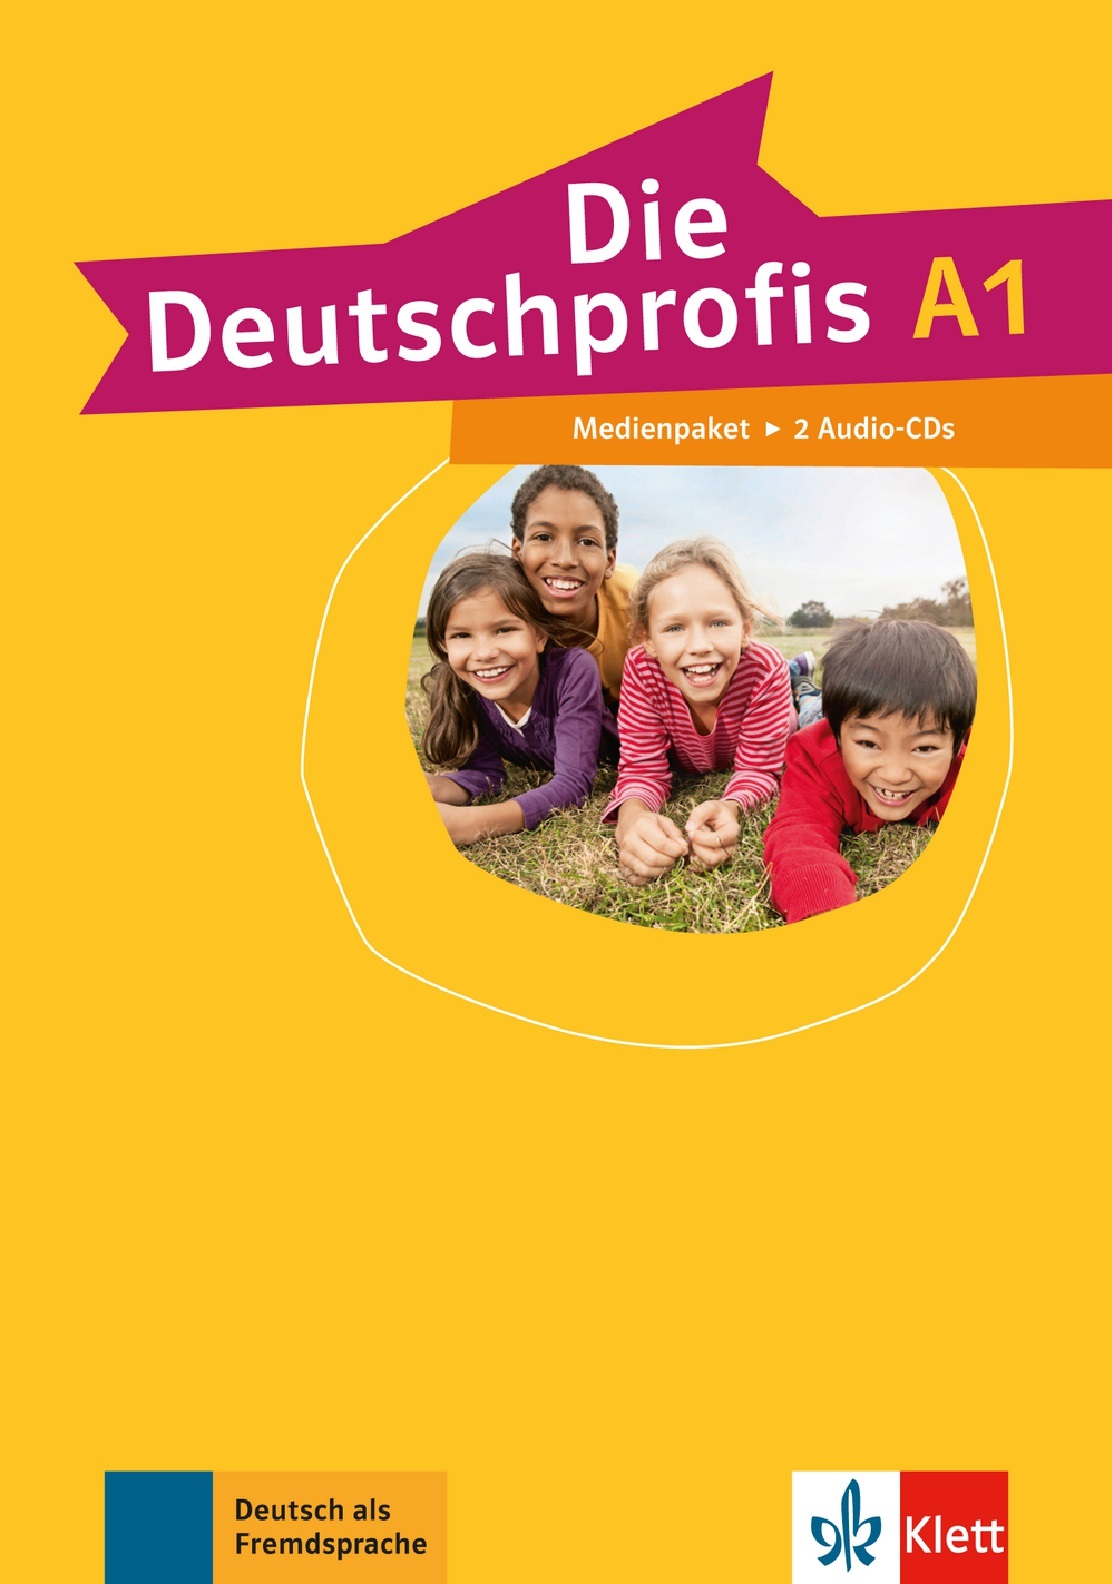 Die Deutschprofis A1 Medienpaket / Аудиодиски